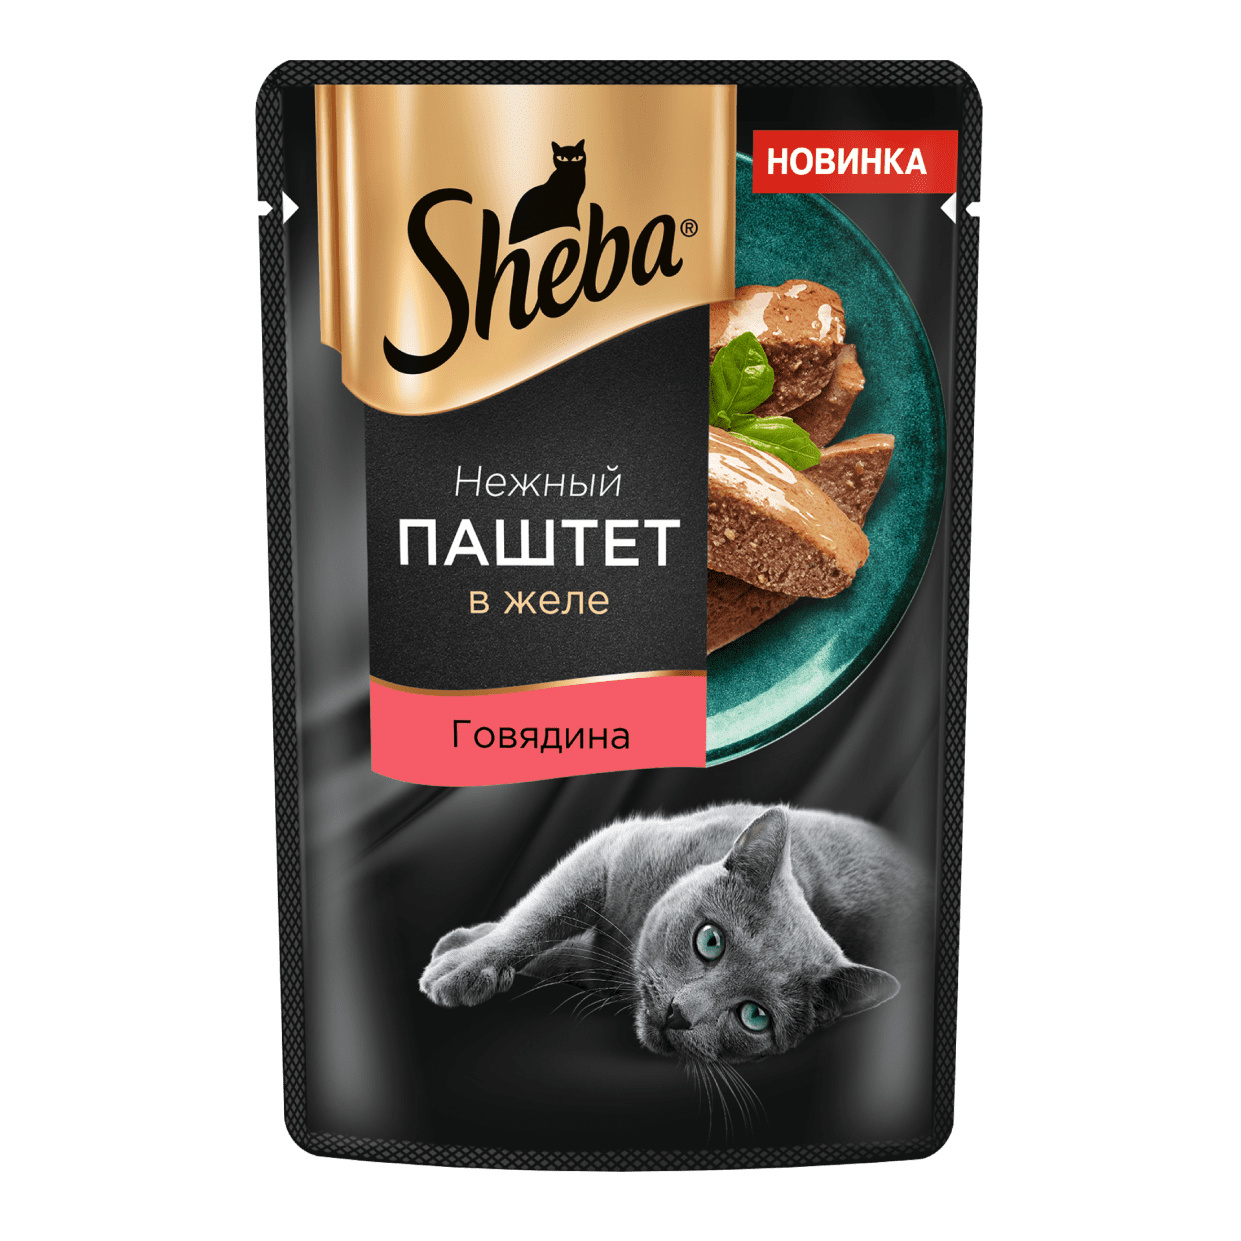 Sheba Sheba влажный корм для кошек Нежный паштет в желе, с говядиной (75 г) паштет мясной люкс ж б ключ 100 г ecochief